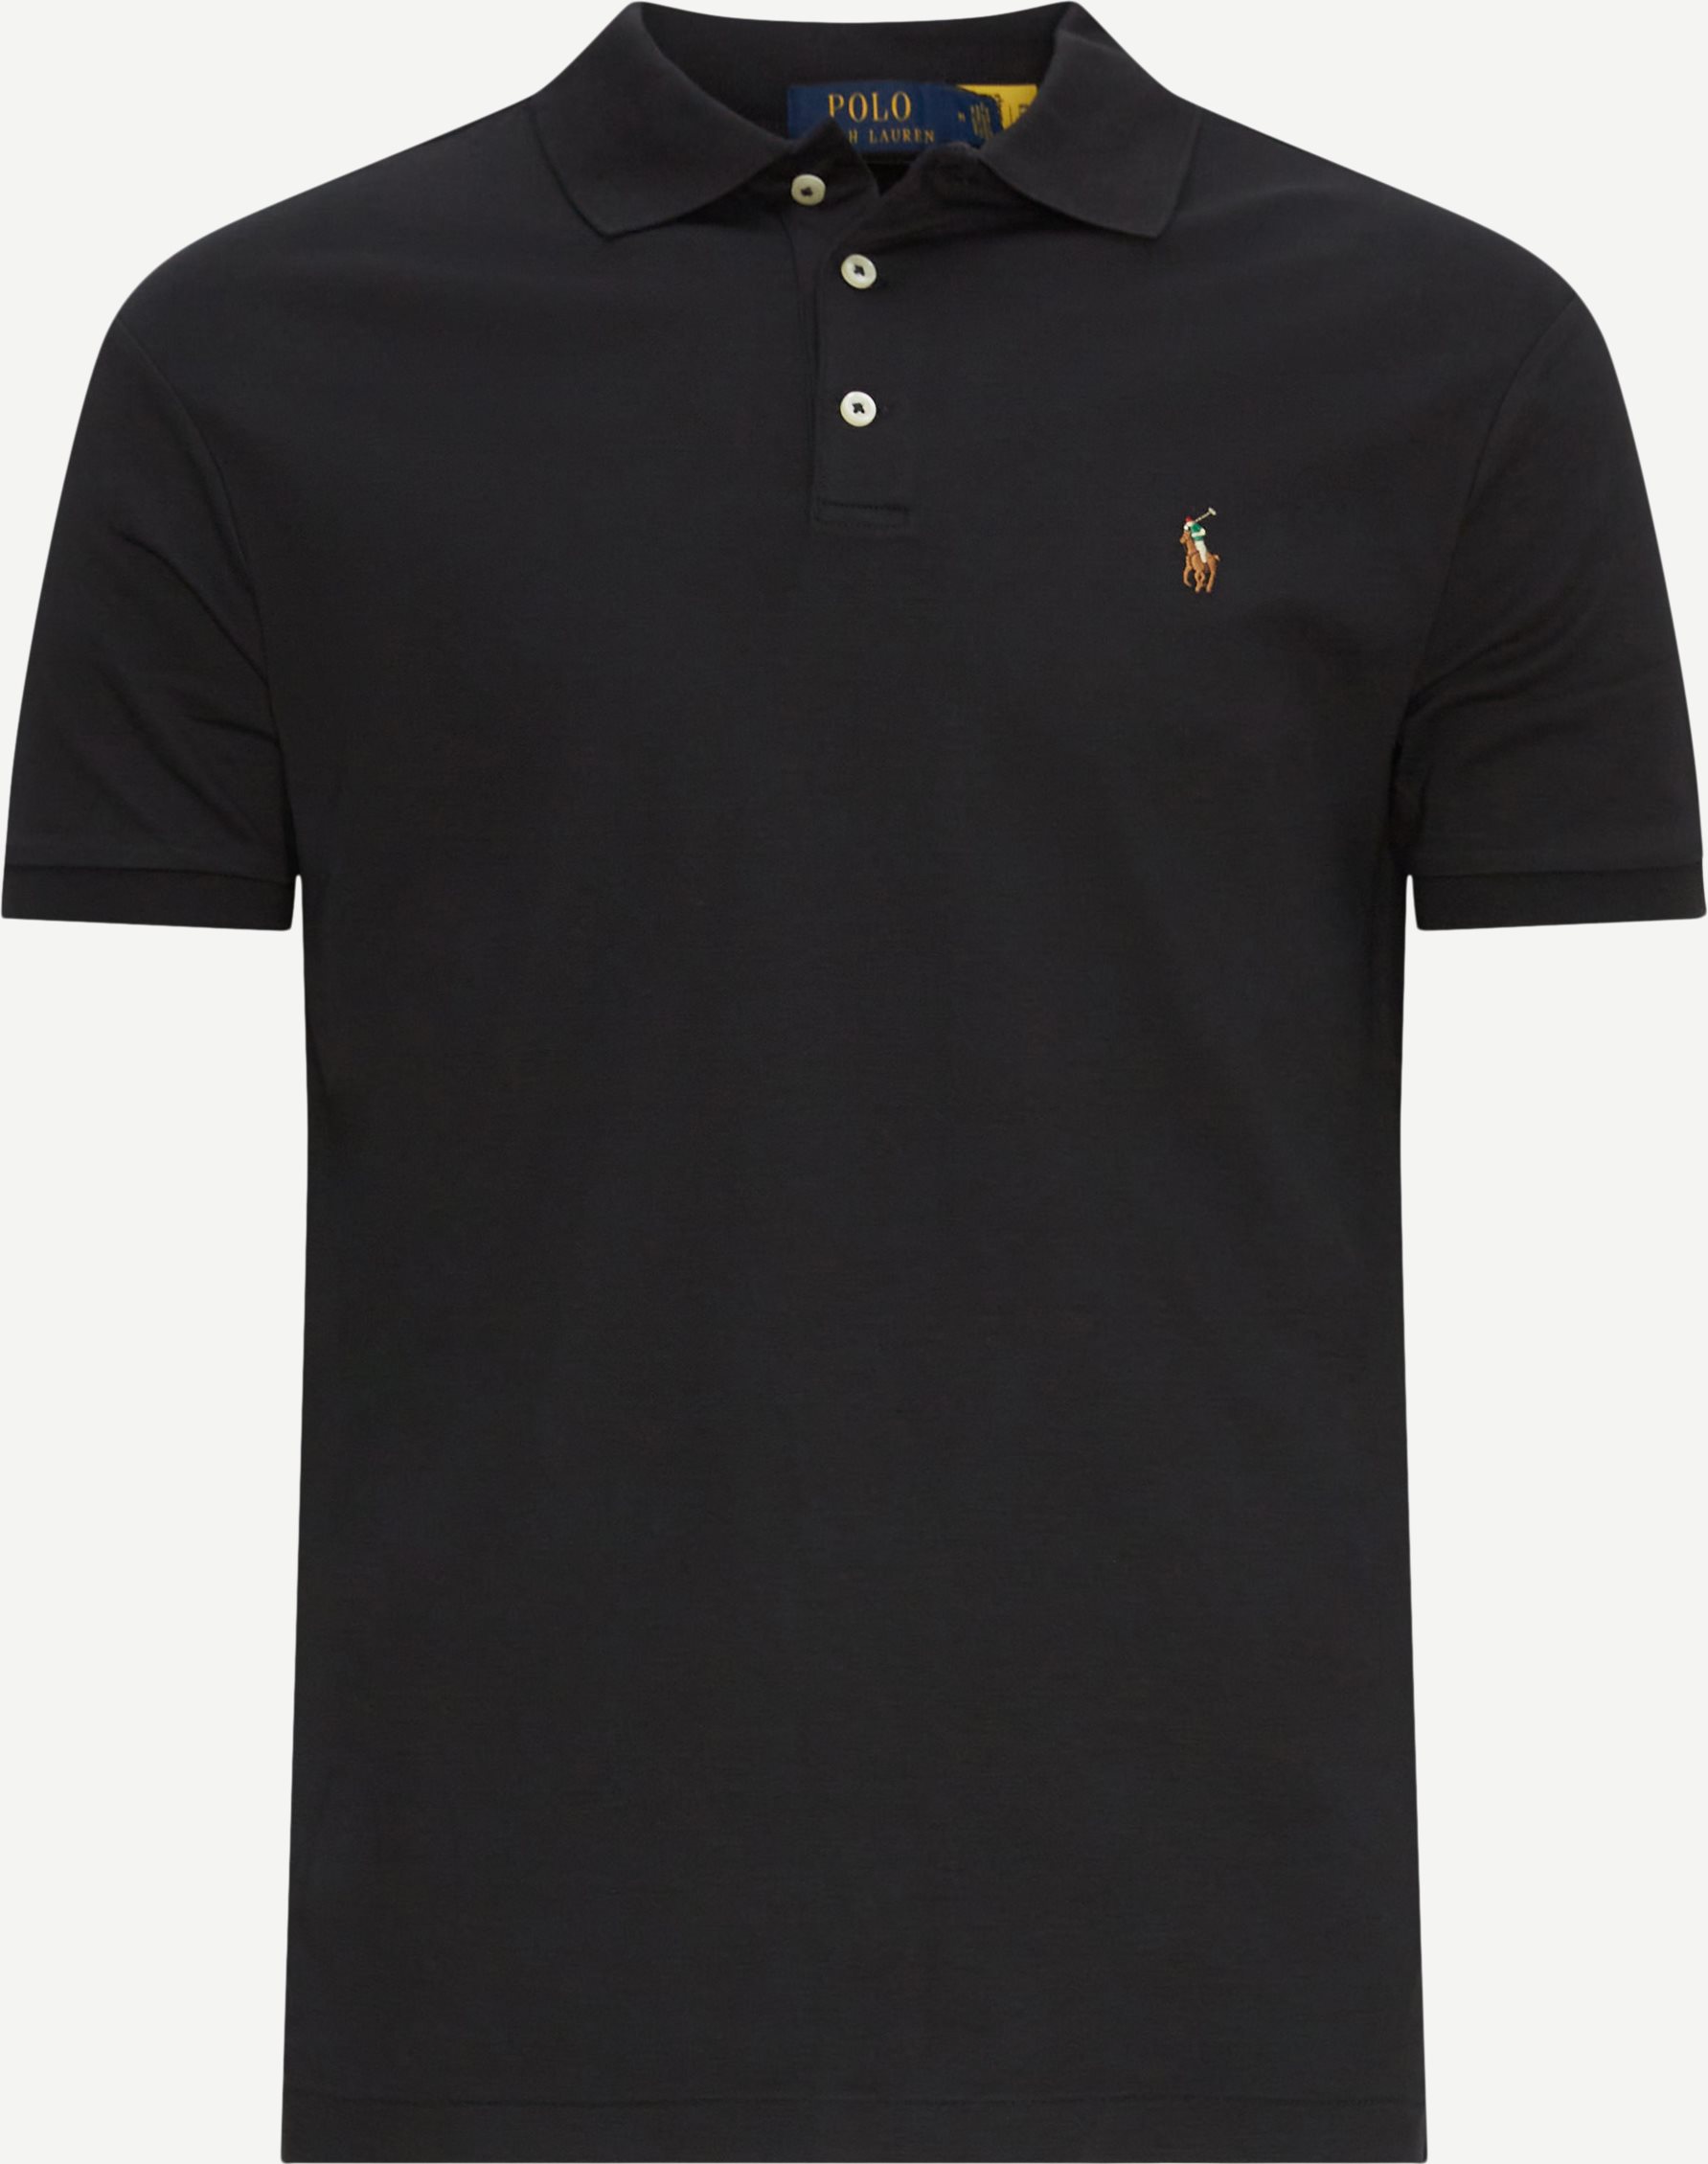 Polo Ralph Lauren T-shirts 710704319/710713130 Svart